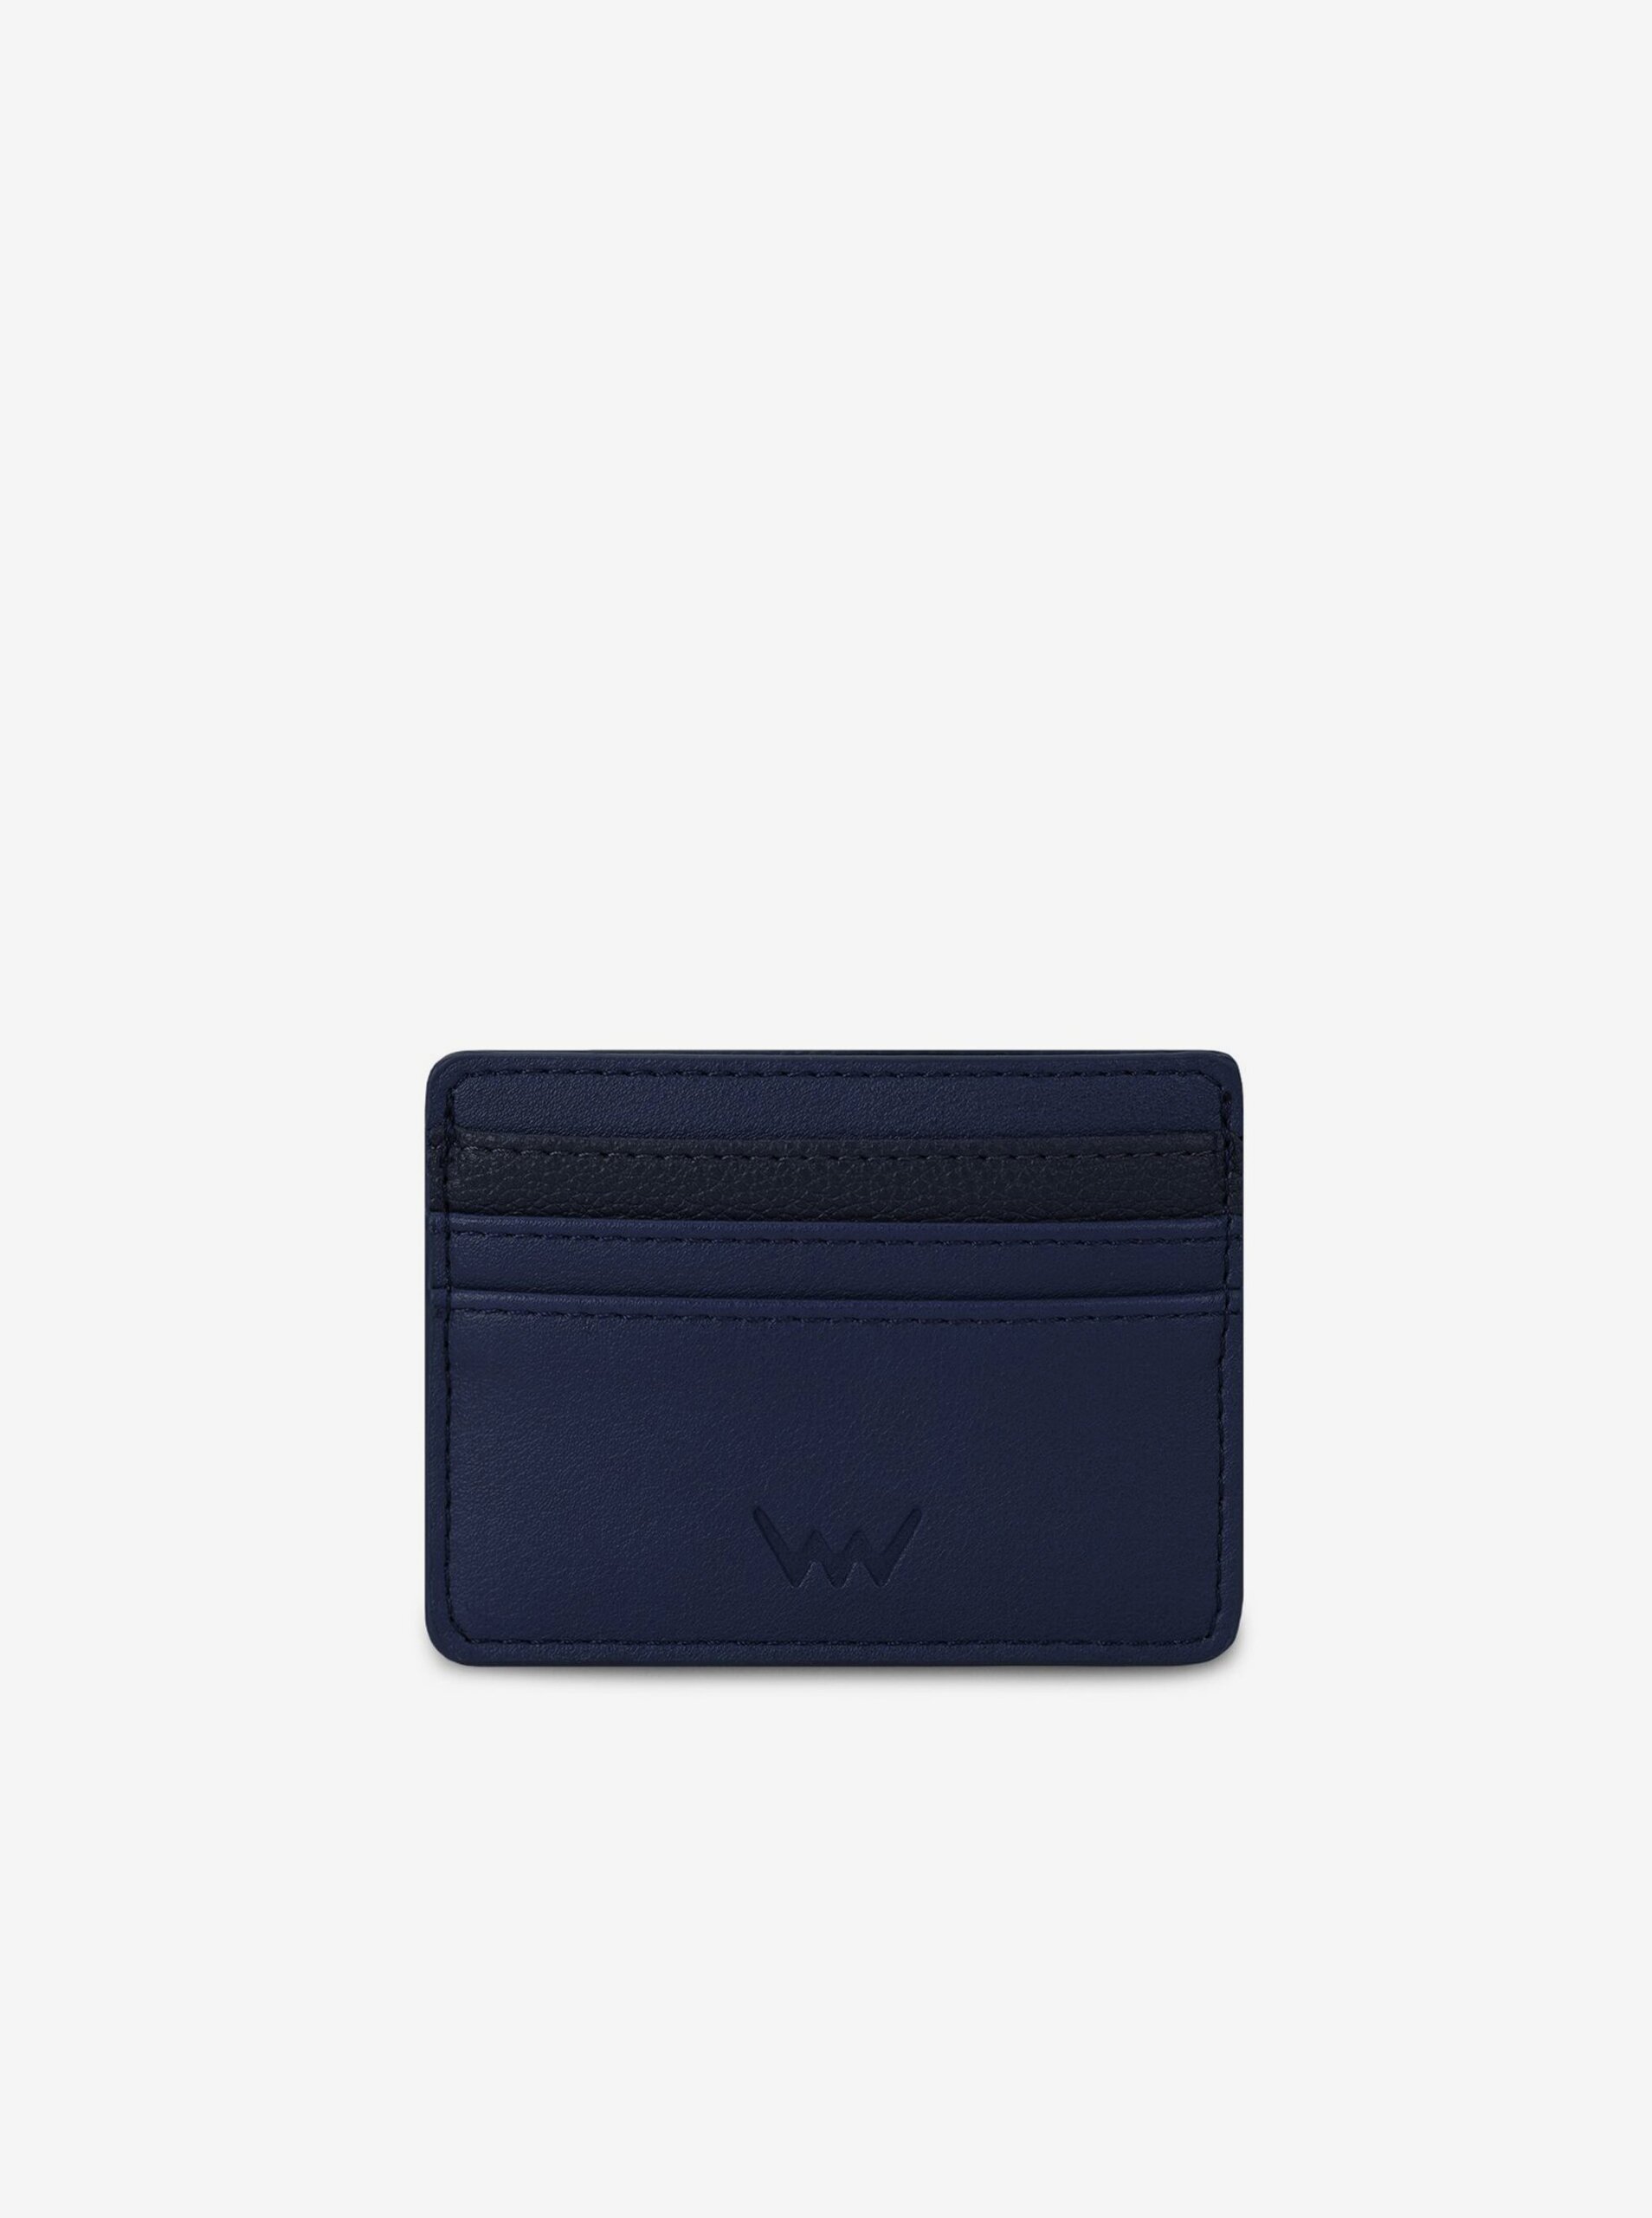 Lacno Tmavomodrá pánska peňaženka Rion Blue